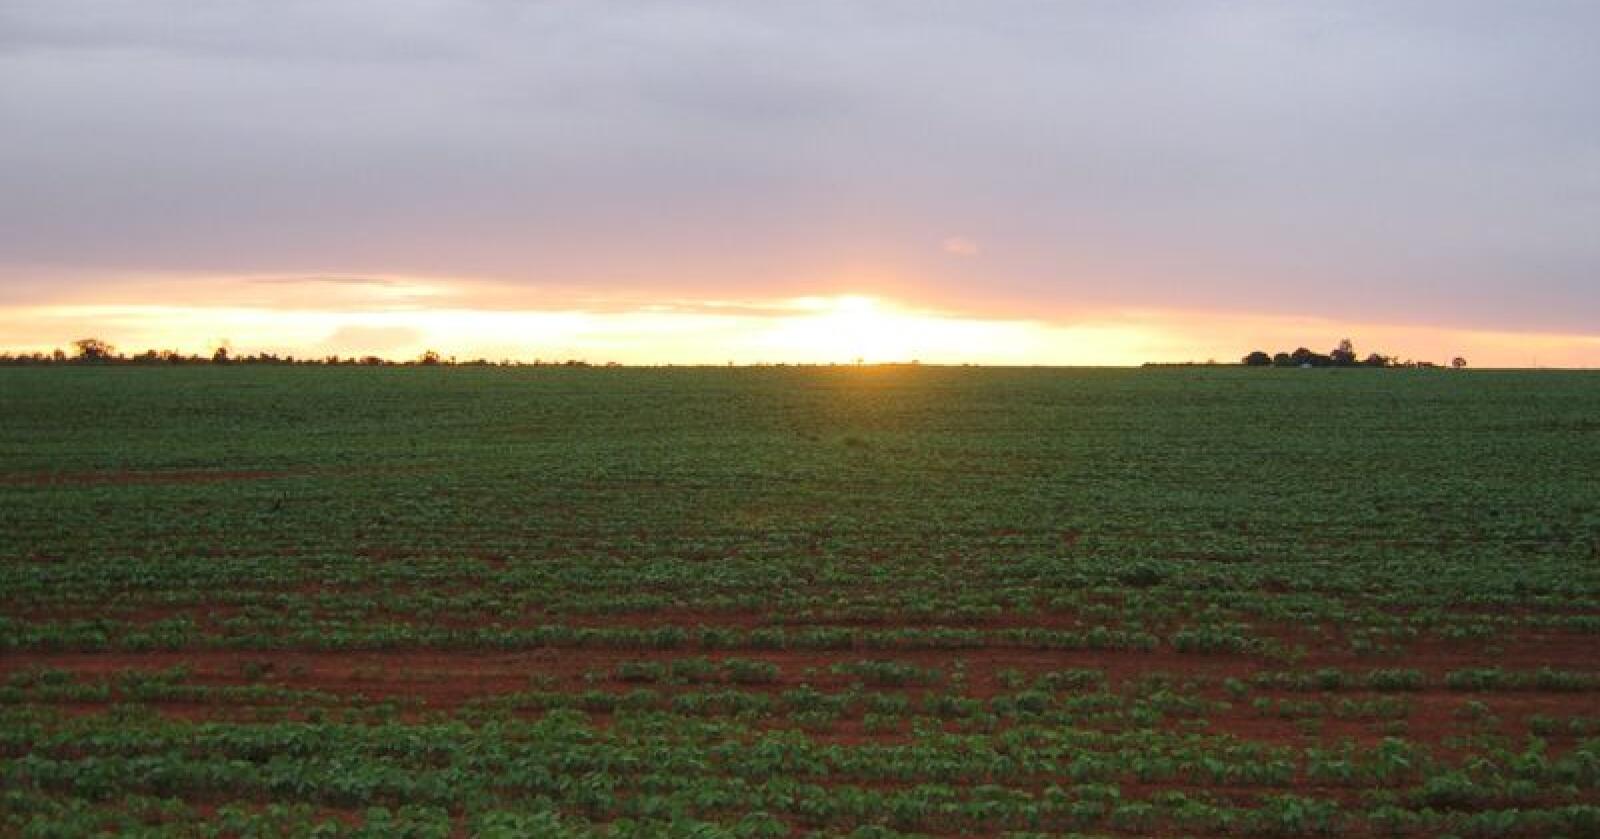  Vinn fram: Produkt frå den sør-amerikanske cerradoen har nyss vunne meir innpass i Europas handlediskar. Foto: Jan Husby